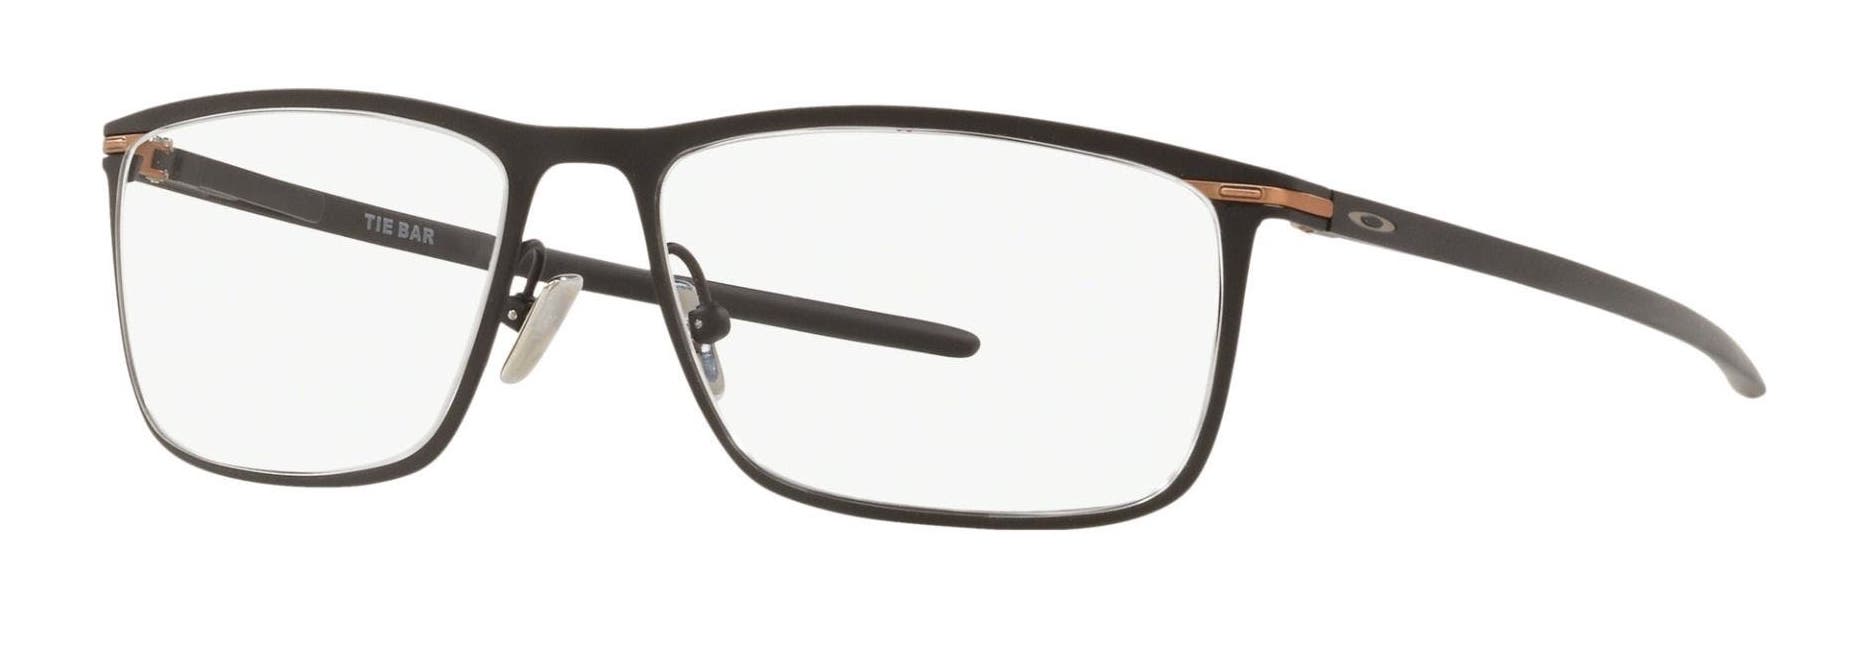 Oakley Tie Bar men's eyeglasses in satin black with clear rectangular lenses.